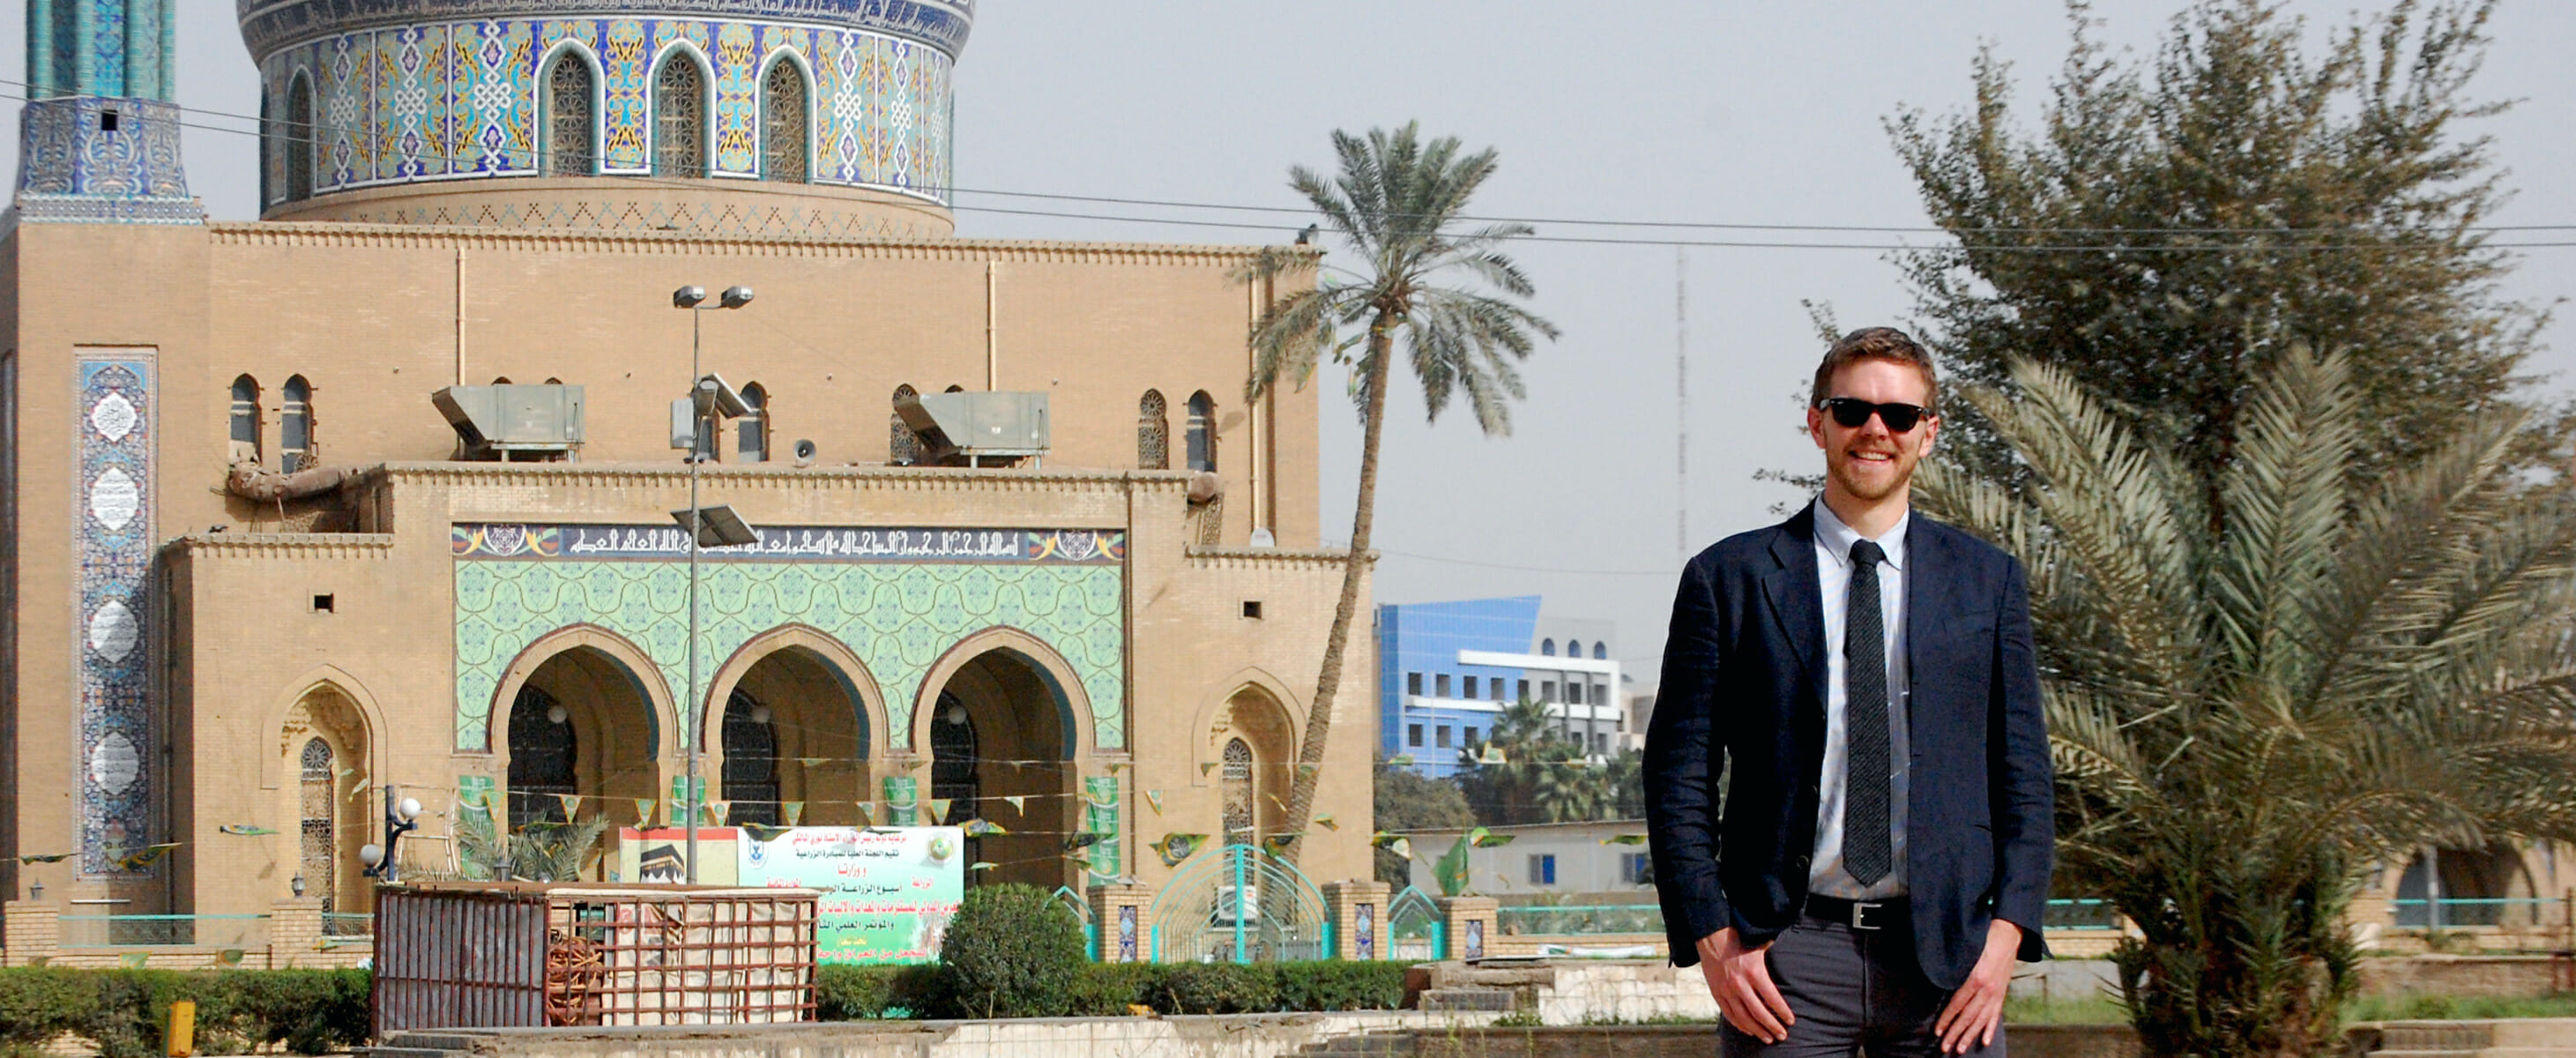 Ben Van Heuvelen in Baghdad, standing next to a mosque.